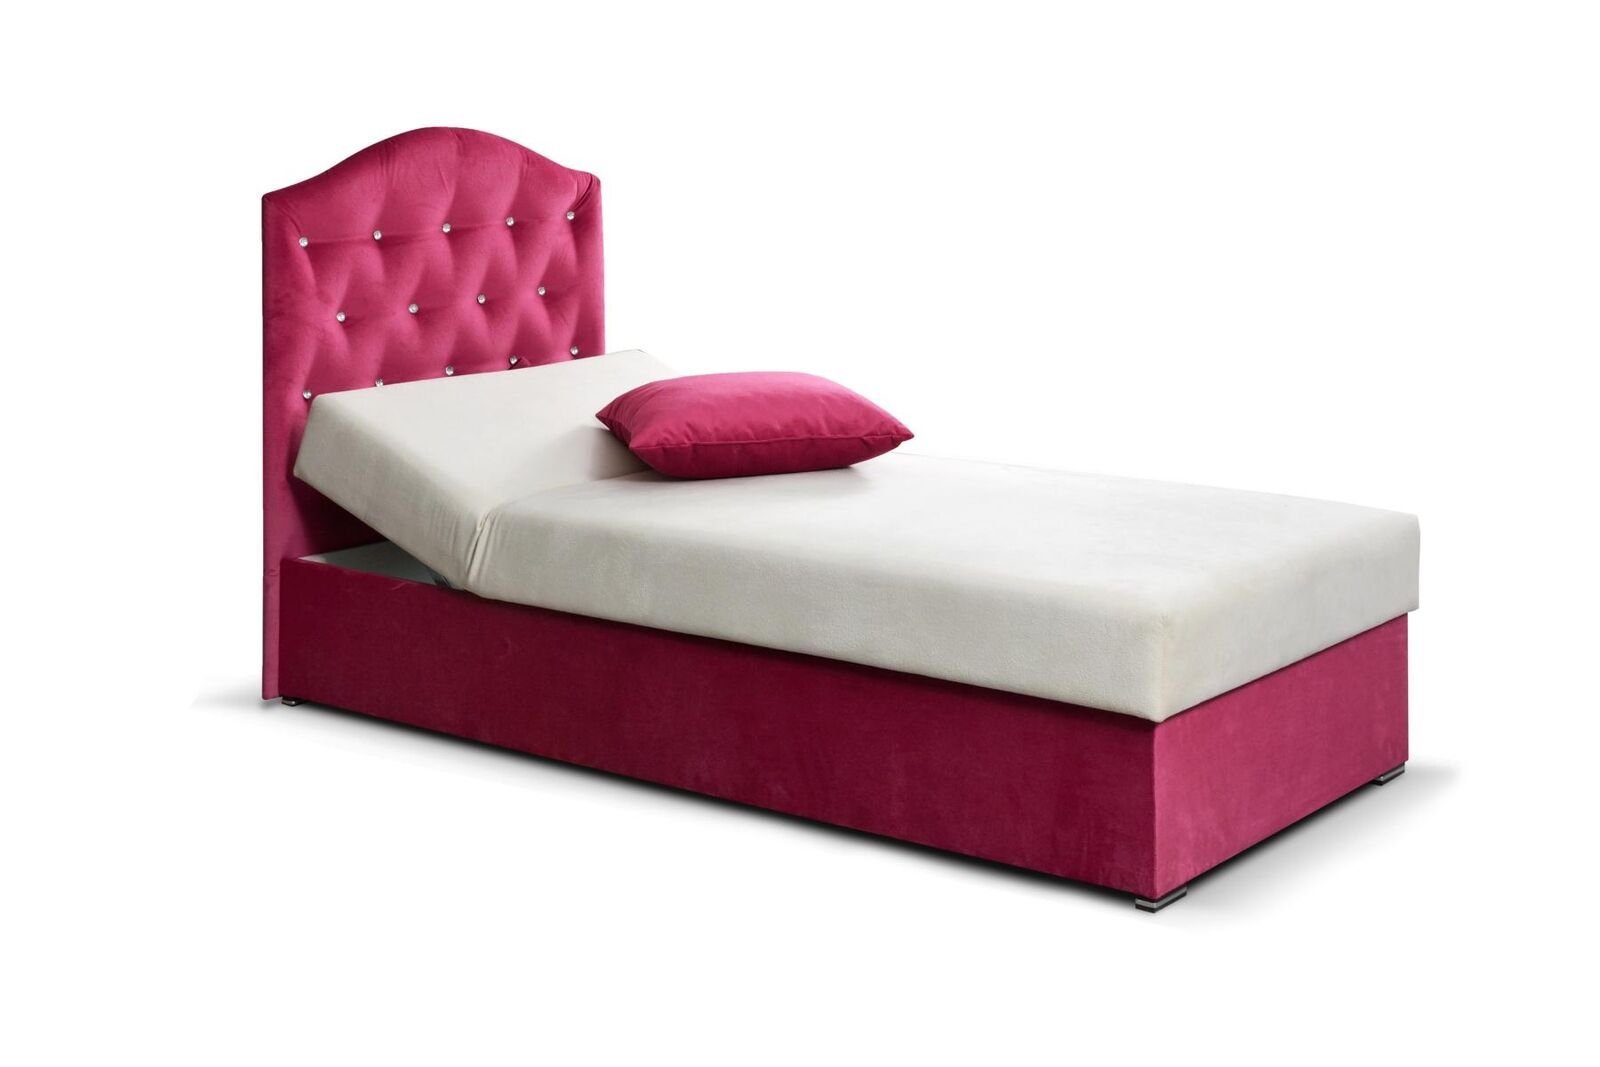 JVmoebel Bett (Einzelbett) Design Einzelbett Luxus Rosa Chesterfield Betten Textil Rahmen